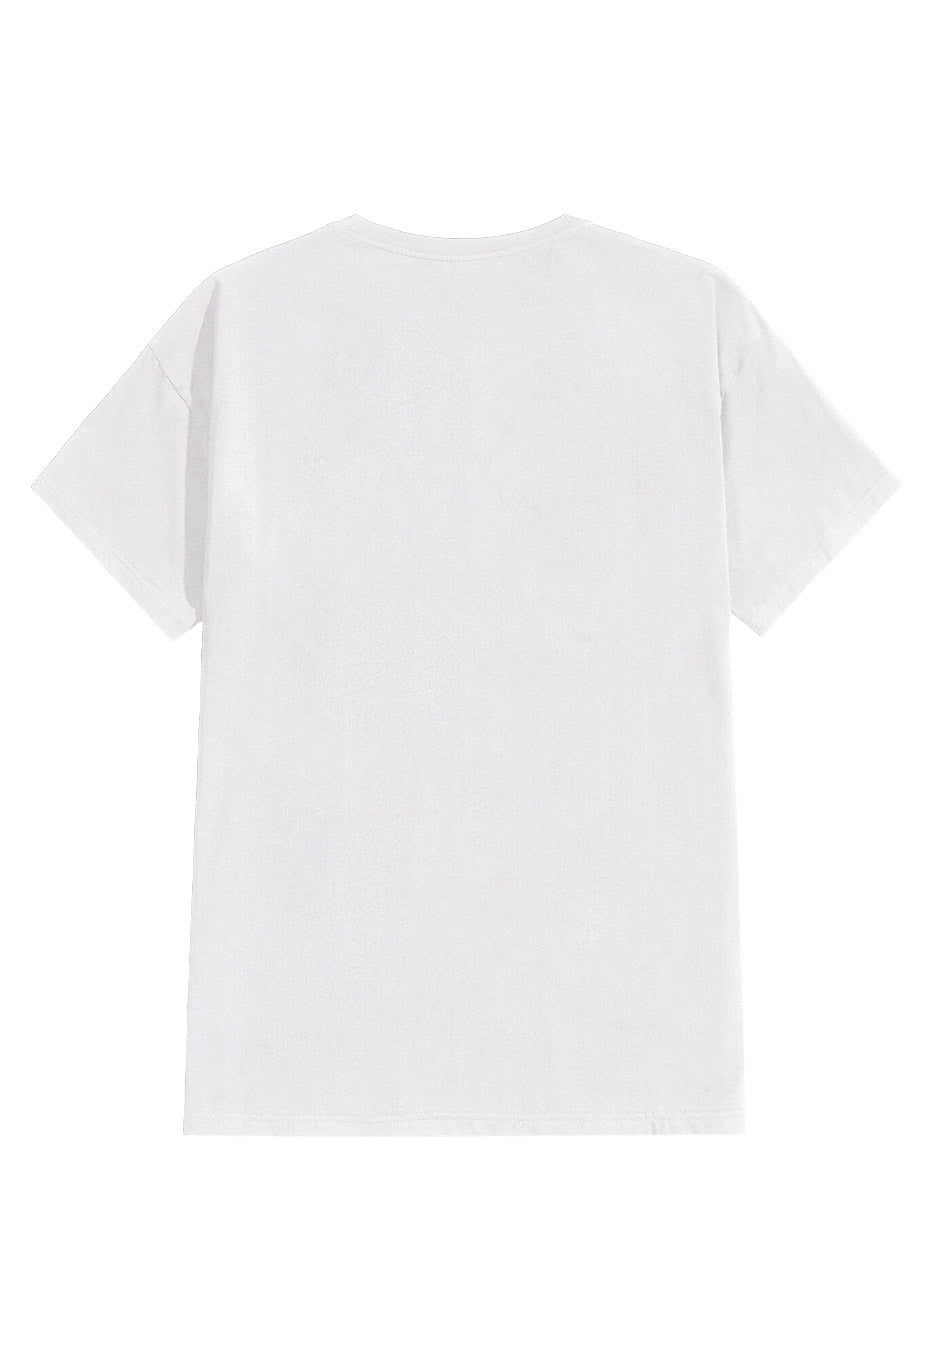 Die Toten Hosen - Ein Bunter Abend Für Eine Schwarze Republik White - T-Shirt